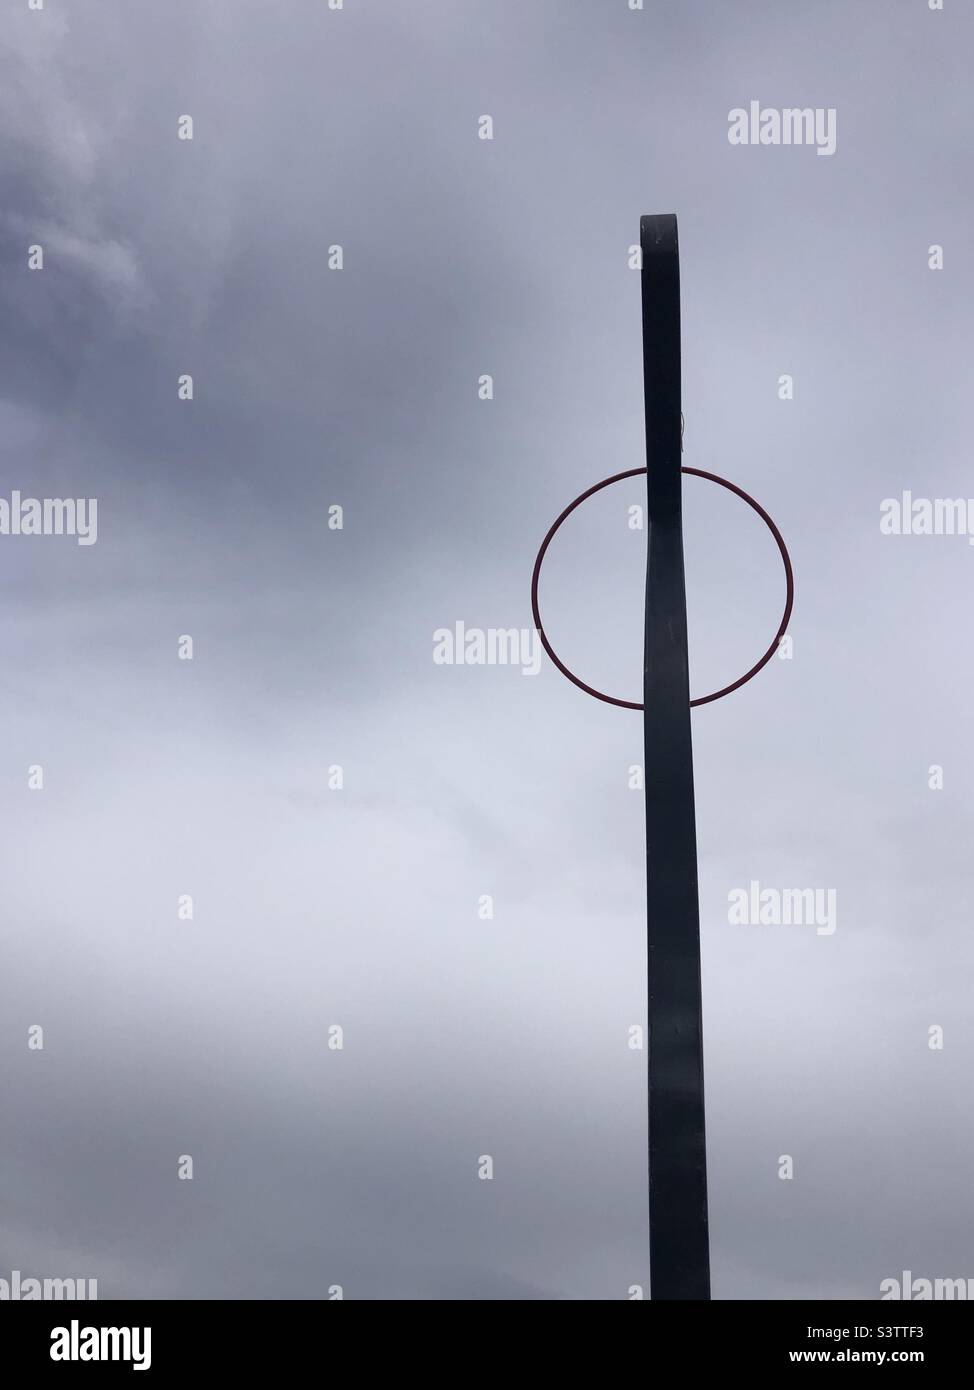 Composición minimalista de aro y barra de metal contra un cielo gris nublado Foto de stock